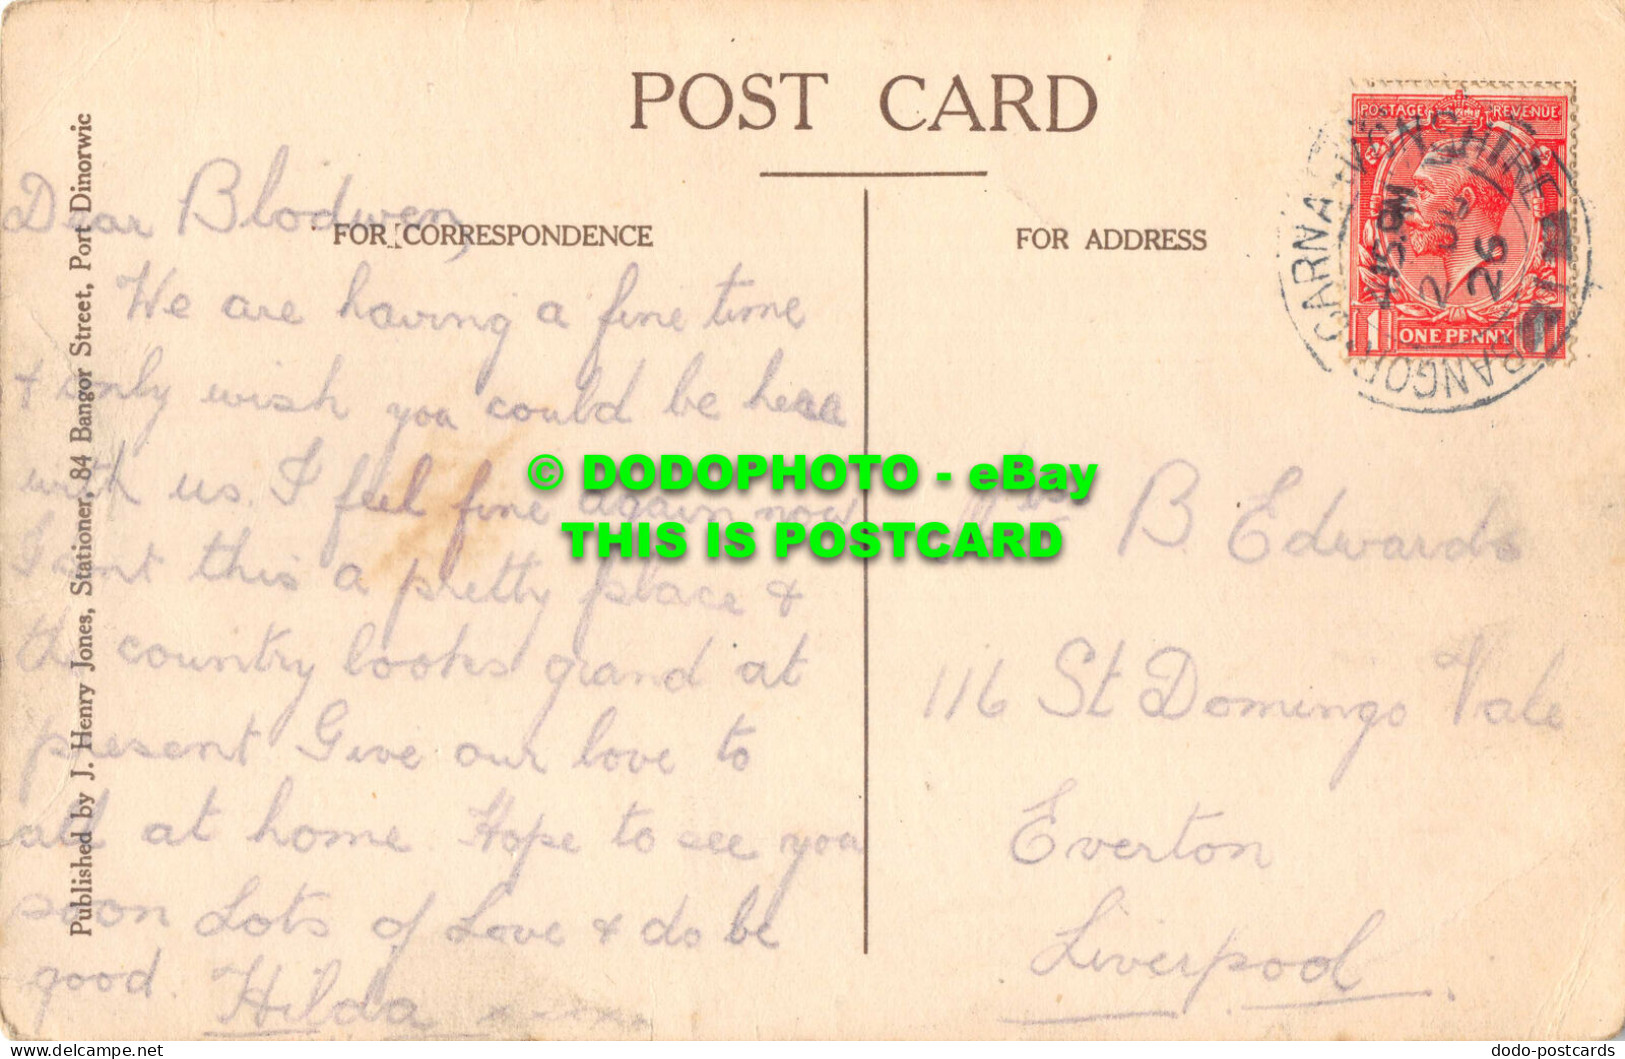 R532442 View Of Moel Y Don From Port Dinorwic. J. Henry Jones. 1926 - Wereld